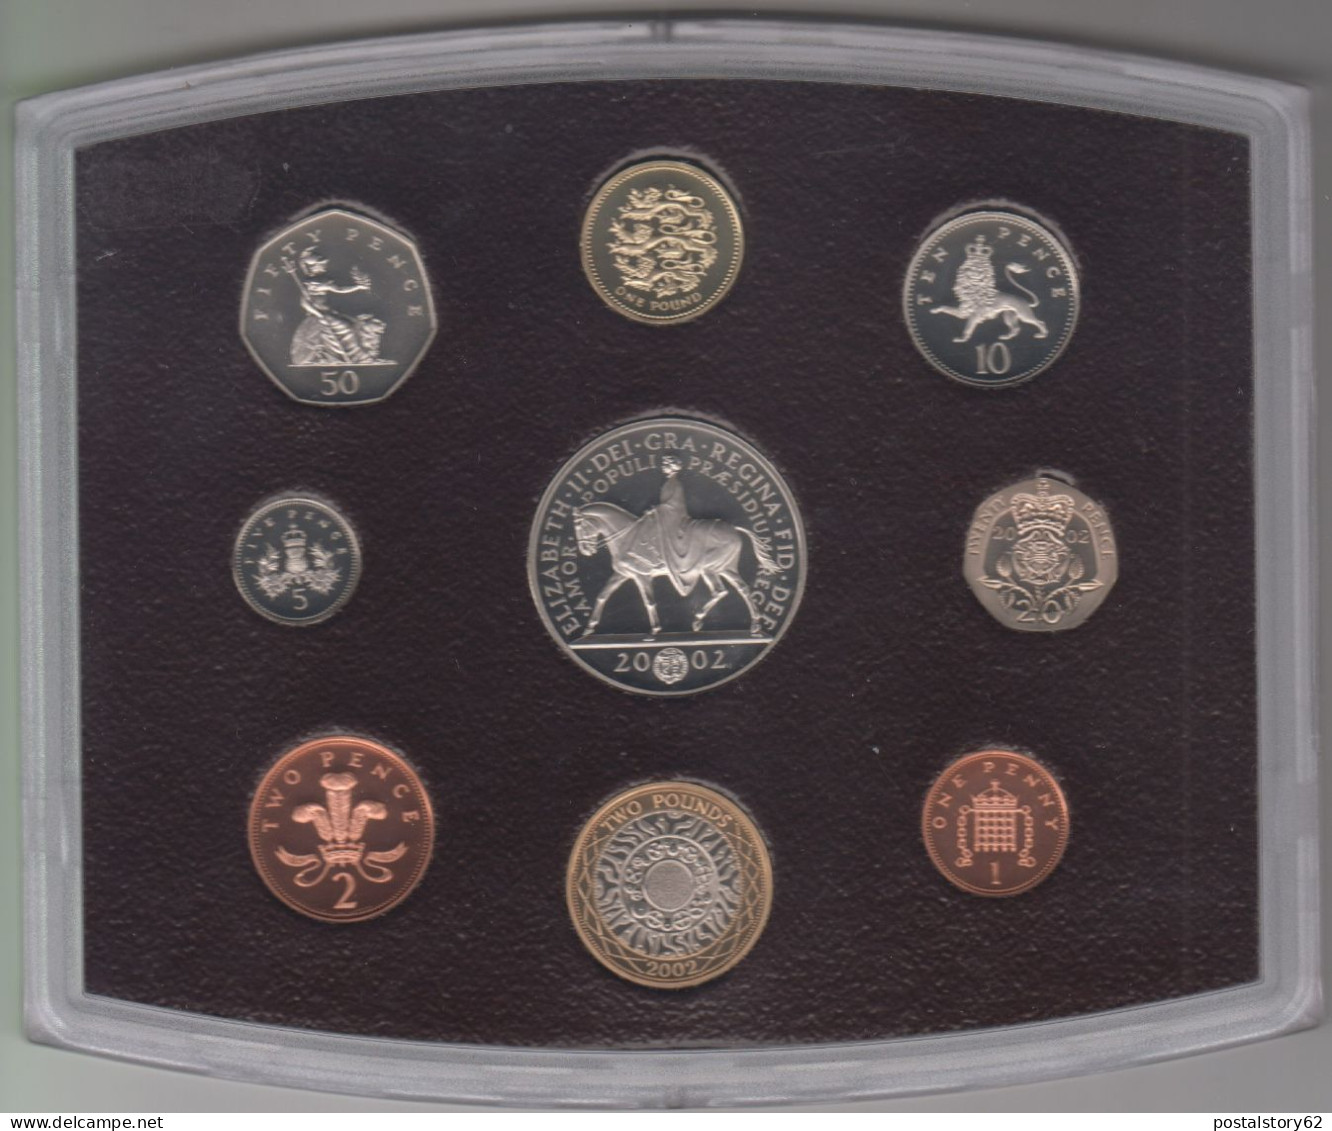 Gran Bretagna, United Kingdom Proof Collection - Serie Completa Ufficiale In Confezione Integra 2002 - Maundy Sets & Gedenkmünzen